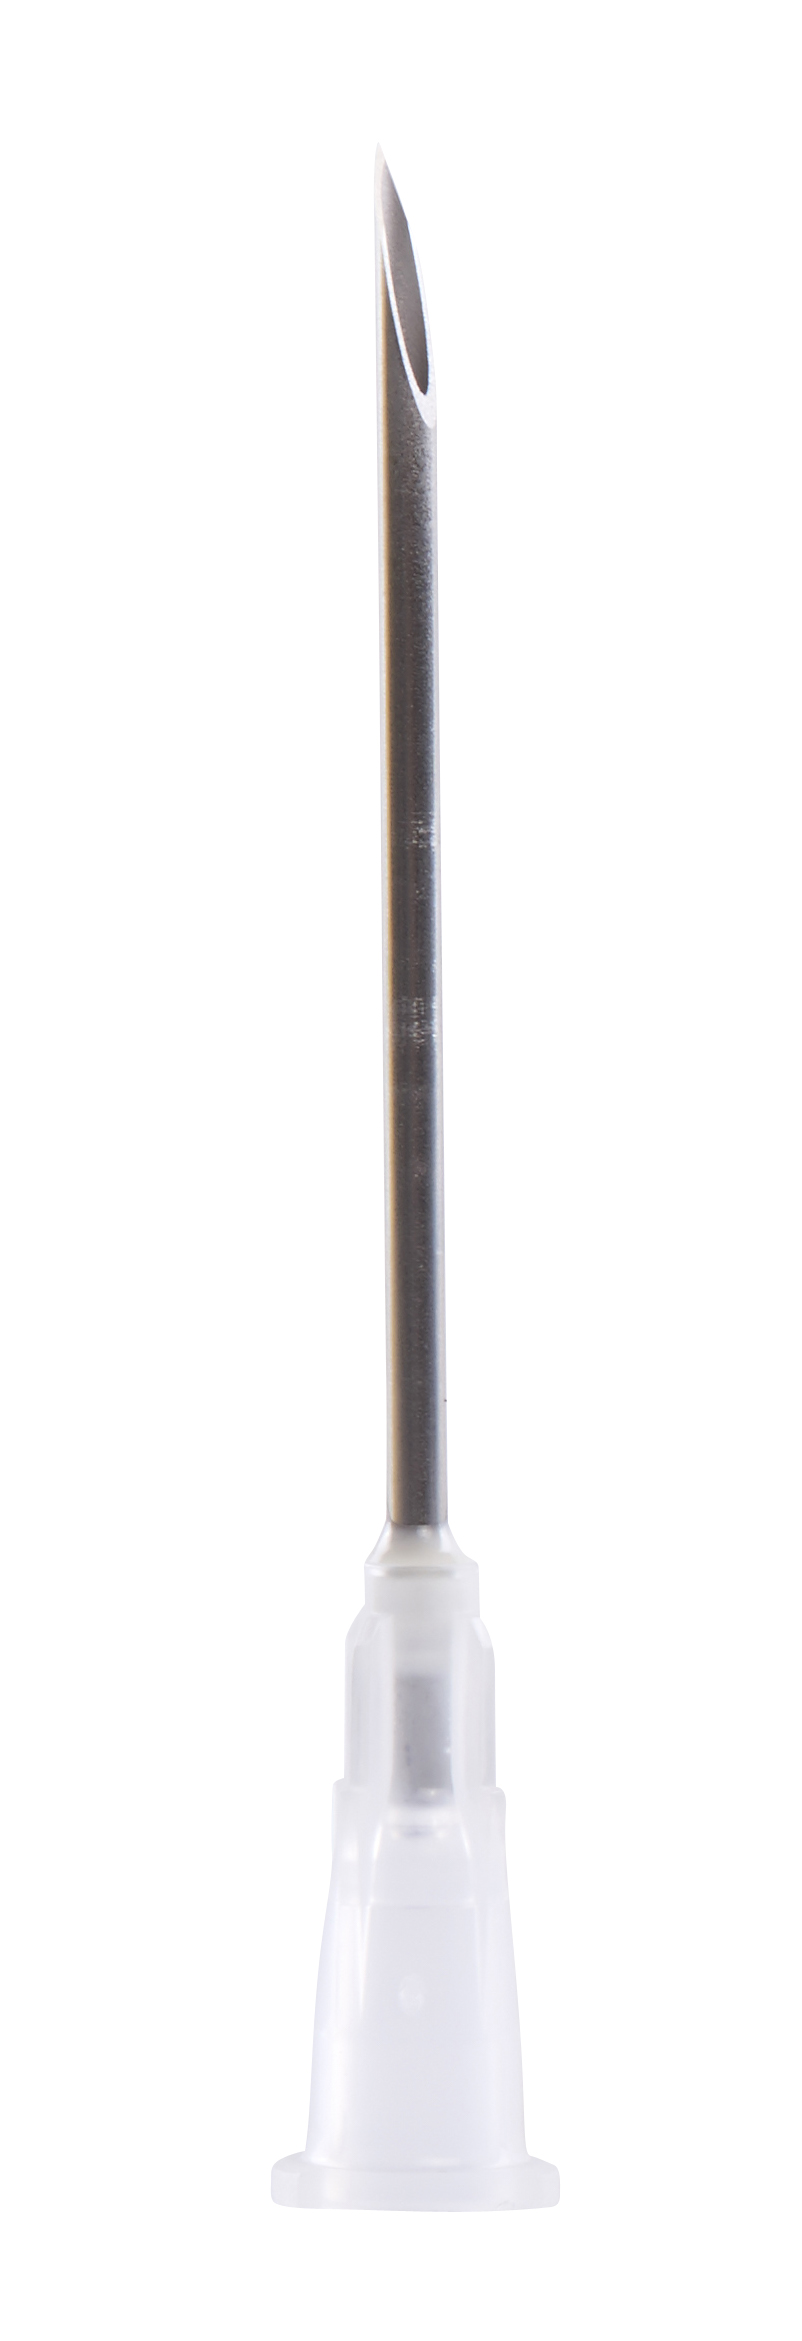 KRUUSE Disposable Needle, 1.6 x 40 mm, 16G x 1½, white, 100/pk